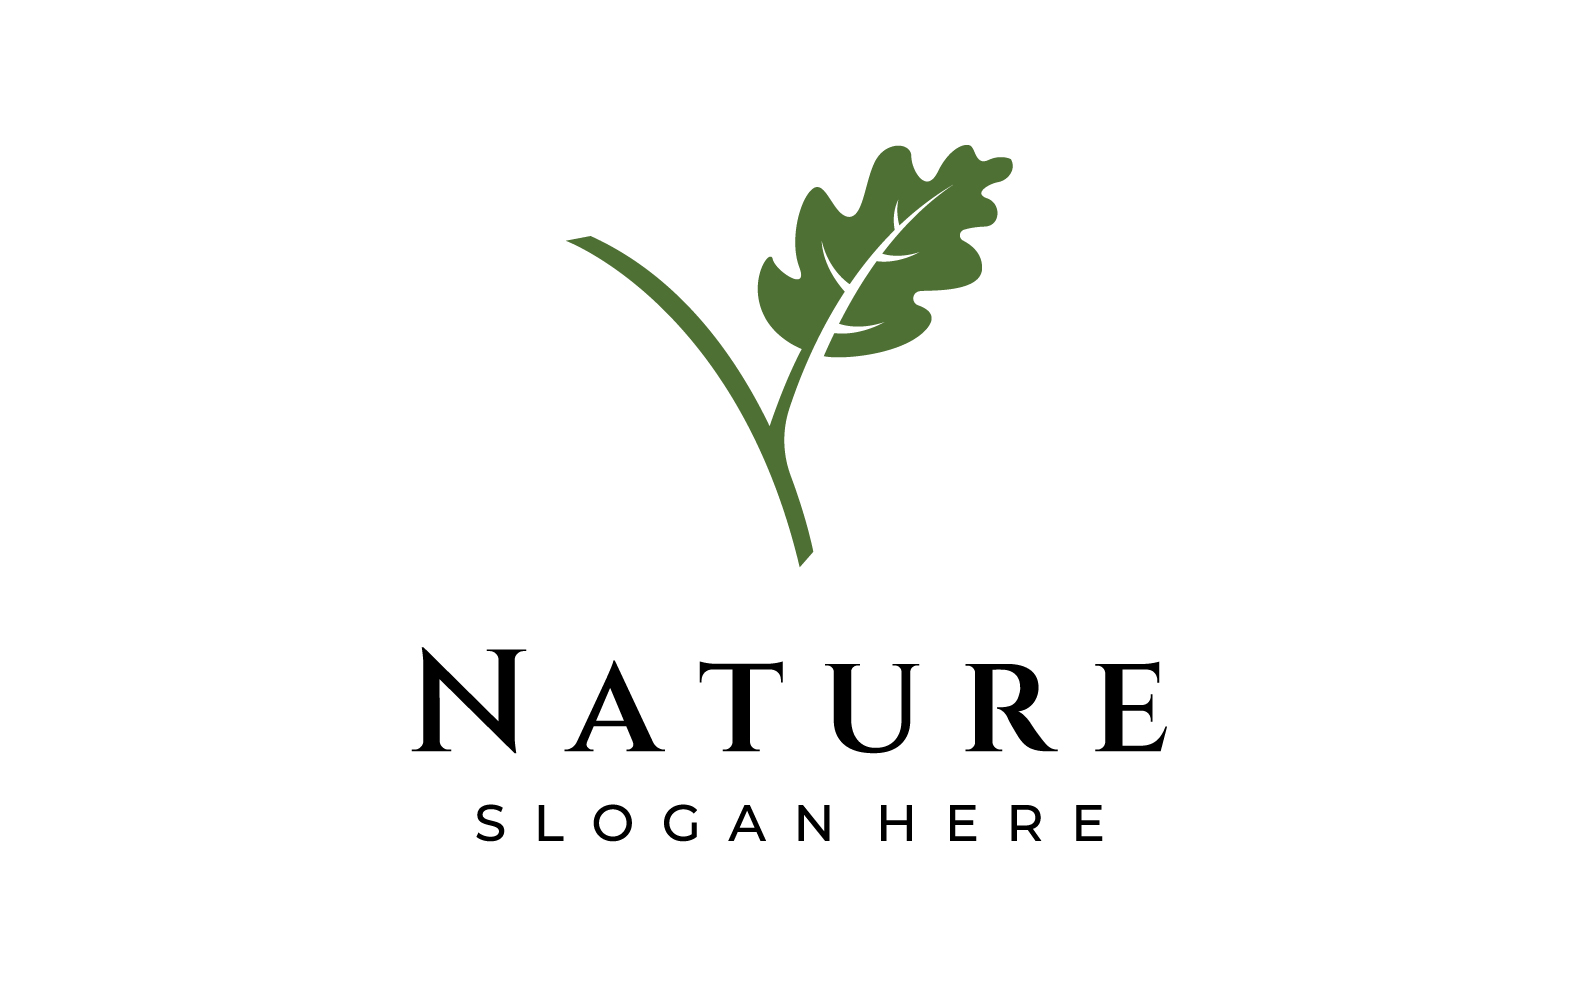 Oak leaf nature logo vector 5